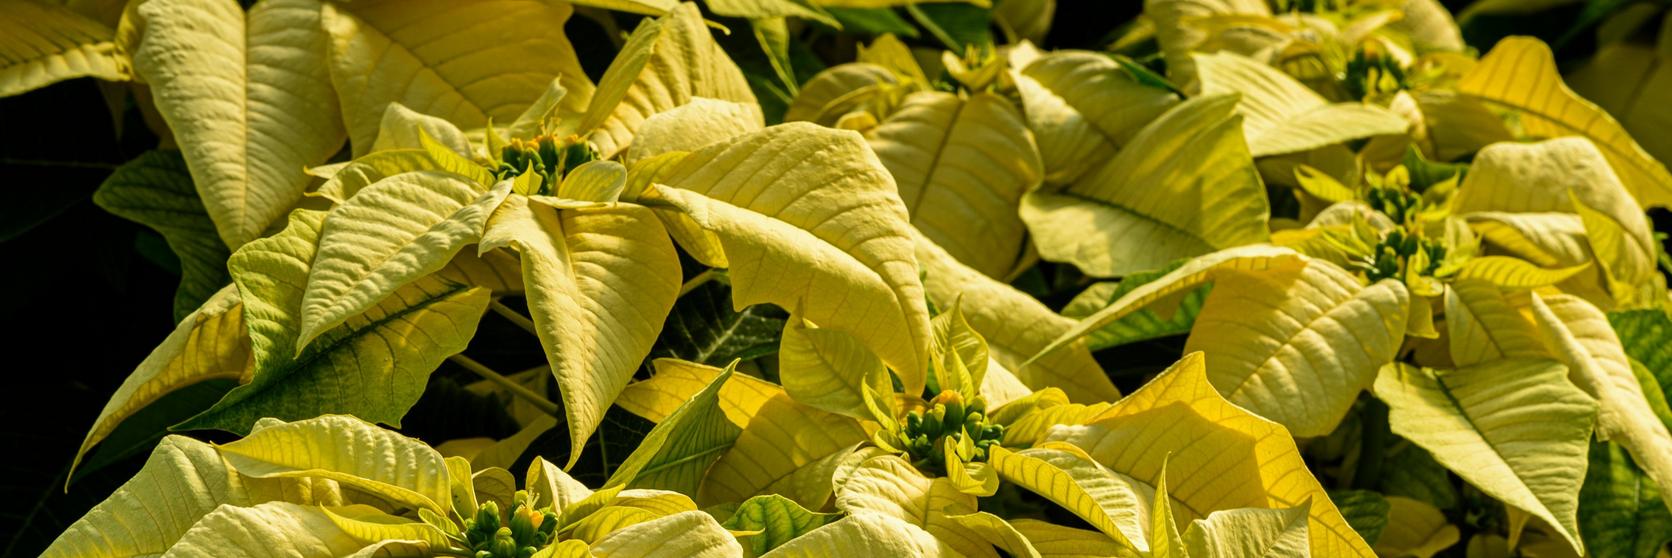 poinsettia-yellow-plants